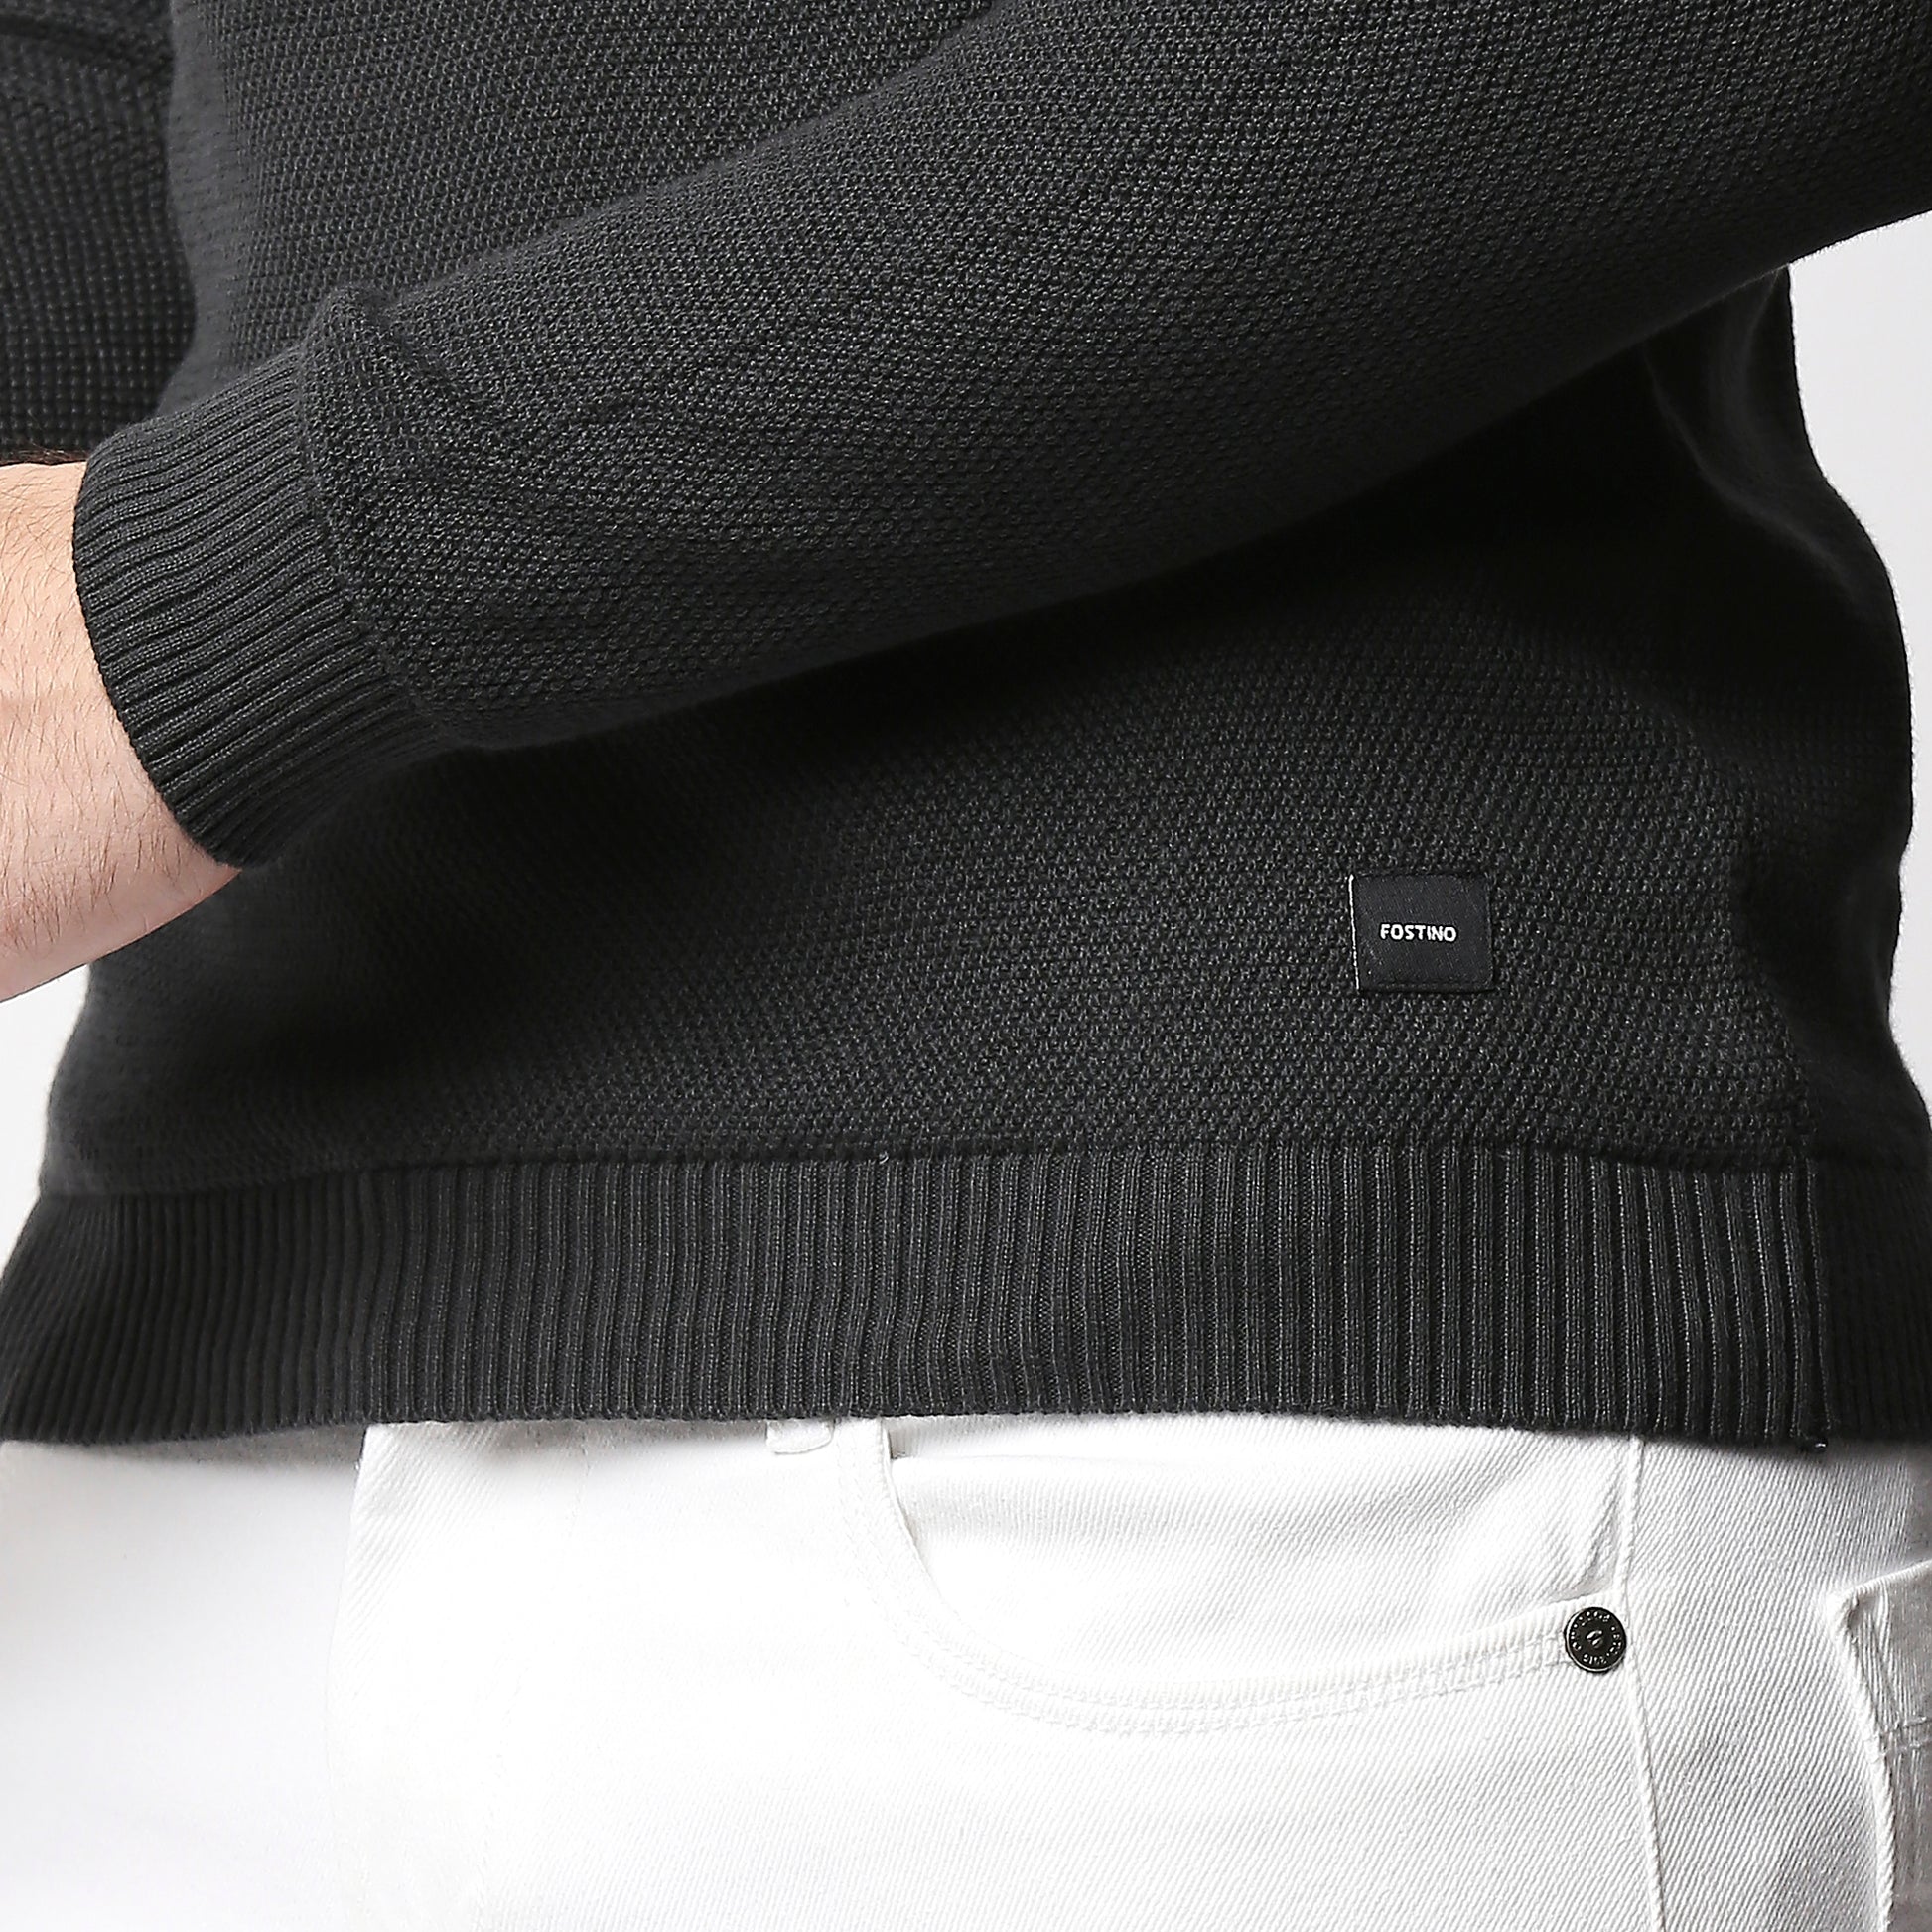 Fostino Dark Grey Knitted Full Sleeves T-shirt - Fostino - Shirts & Tops